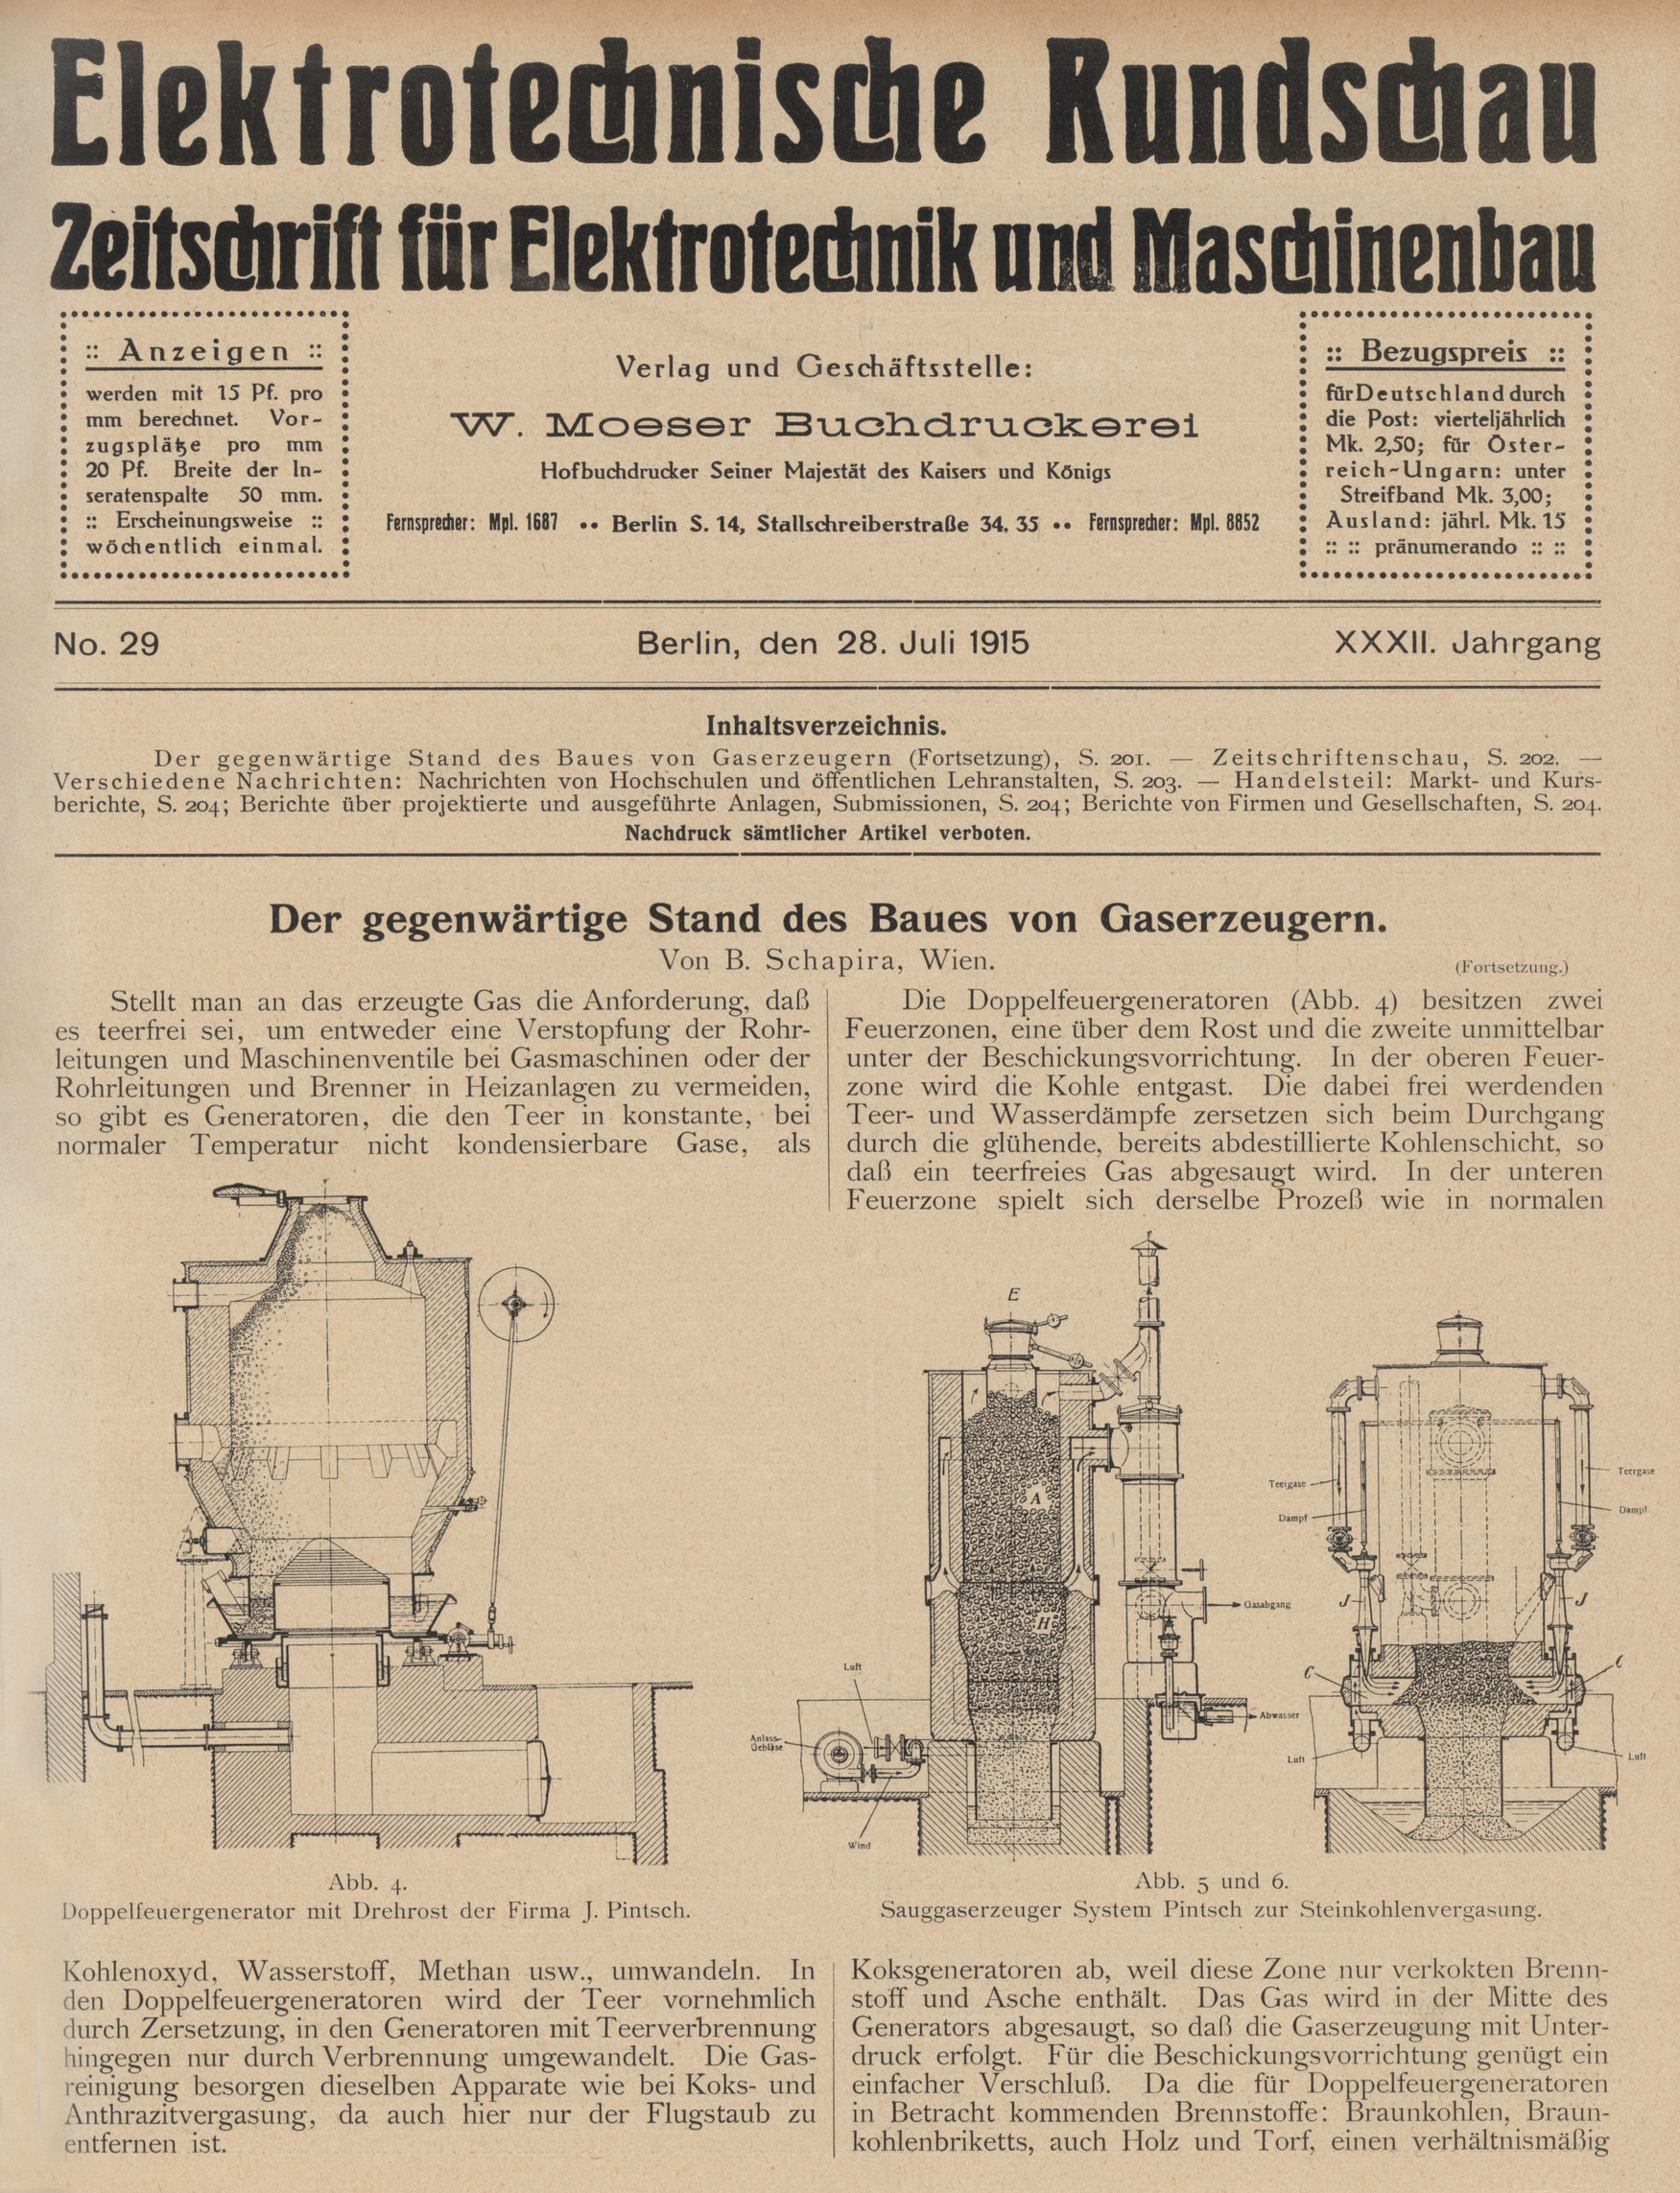 Elektrotechnische Rundschau : Zeitschrift für Elektrotechnik und Maschinenbau + Polytechnische Rundschau, No. 29, XXXII. Jahrgang